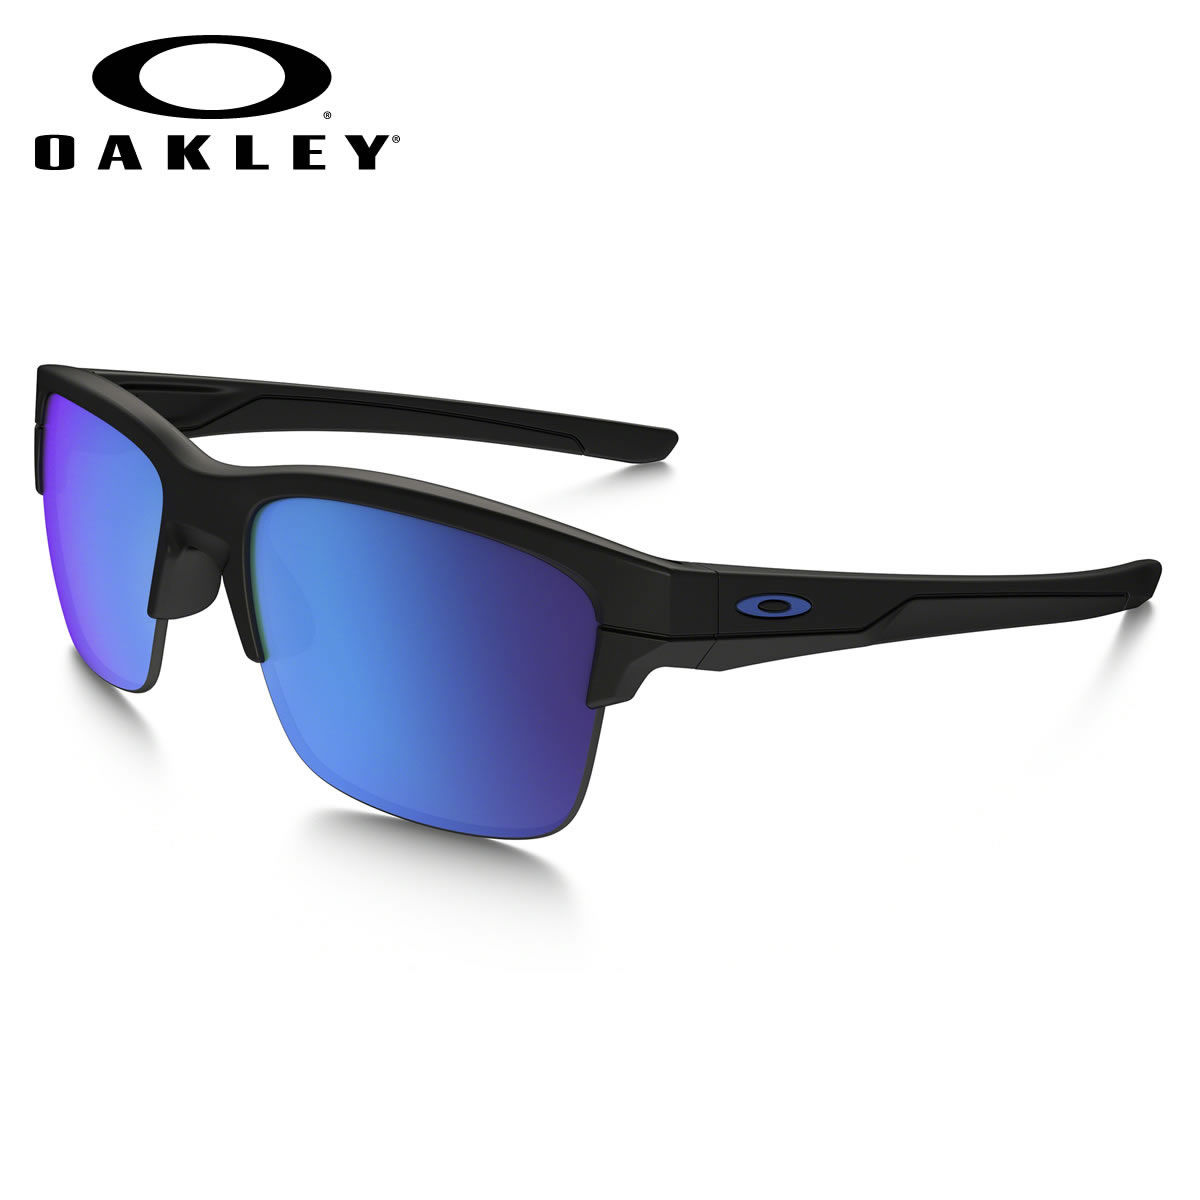 oakley sunglasses for wide bridge